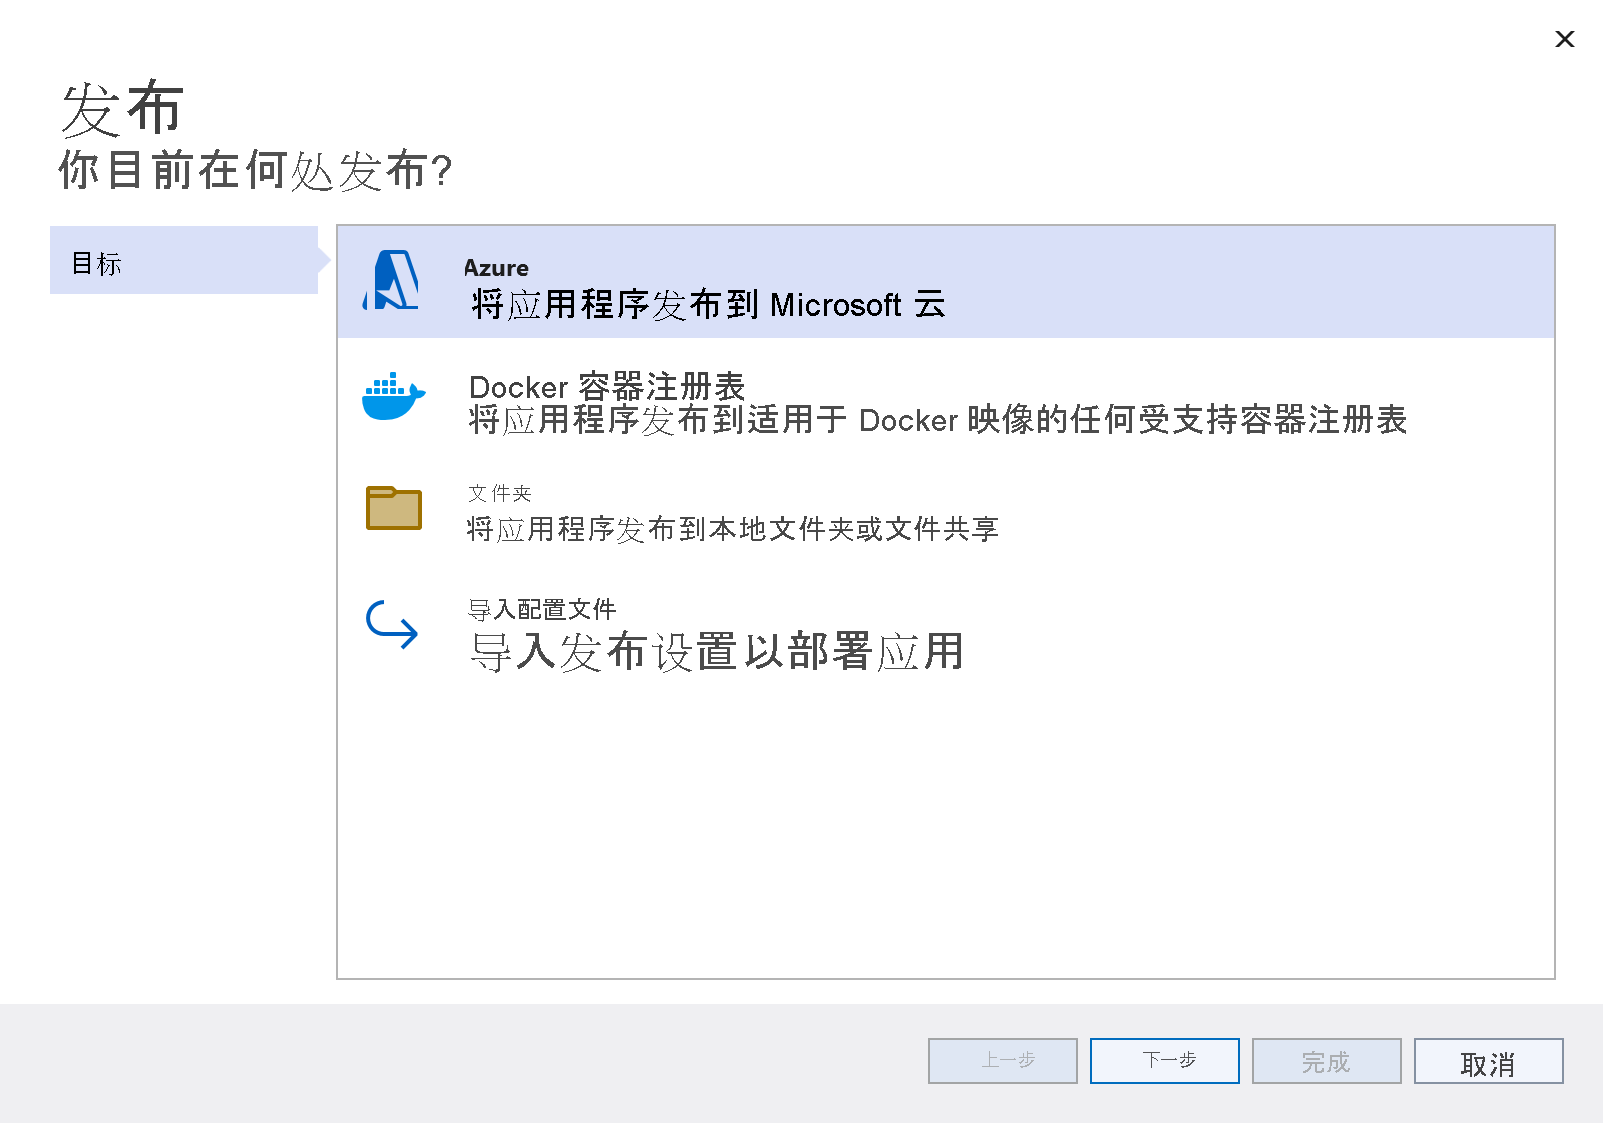 “发布目标”窗口的屏幕截图，其中突出显示了 Azure 选项。